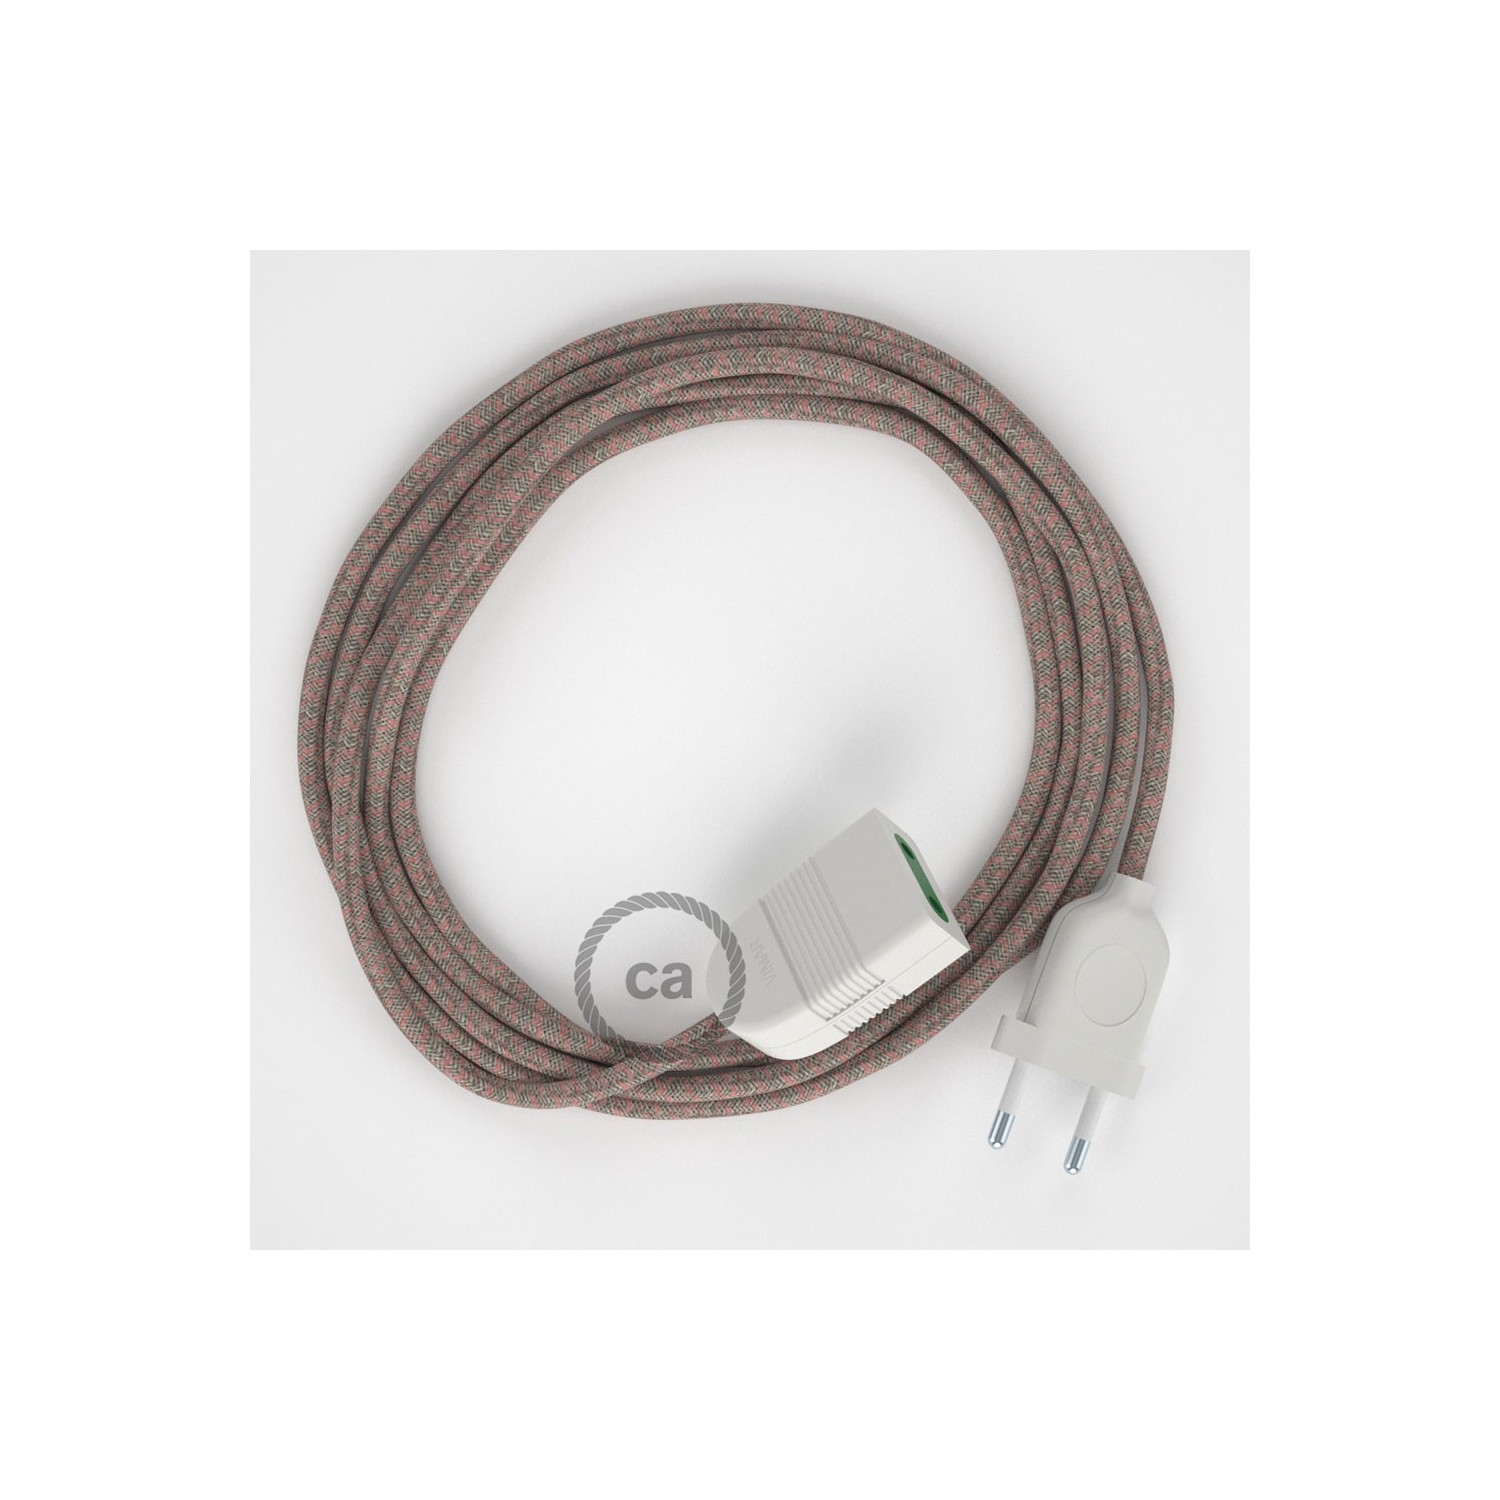 Rallonge électrique avec câble textile RD61 Coton et Lin Naturel Losange Vieux Rose 2P 10A Made in Italy.